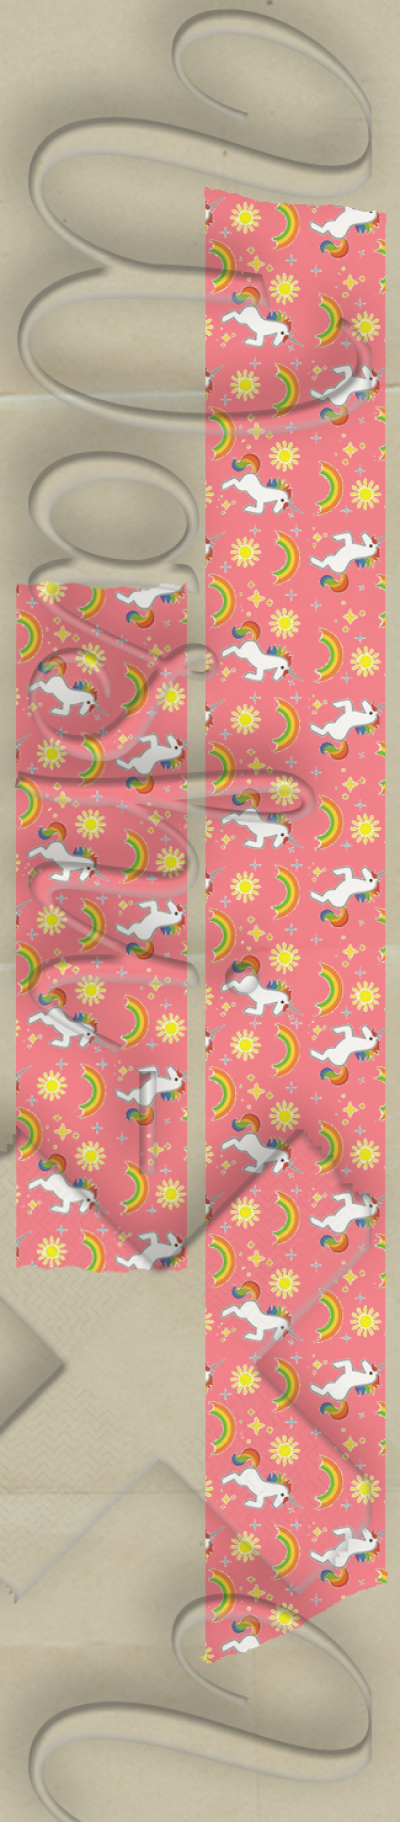 Unicorns patterned washi tape